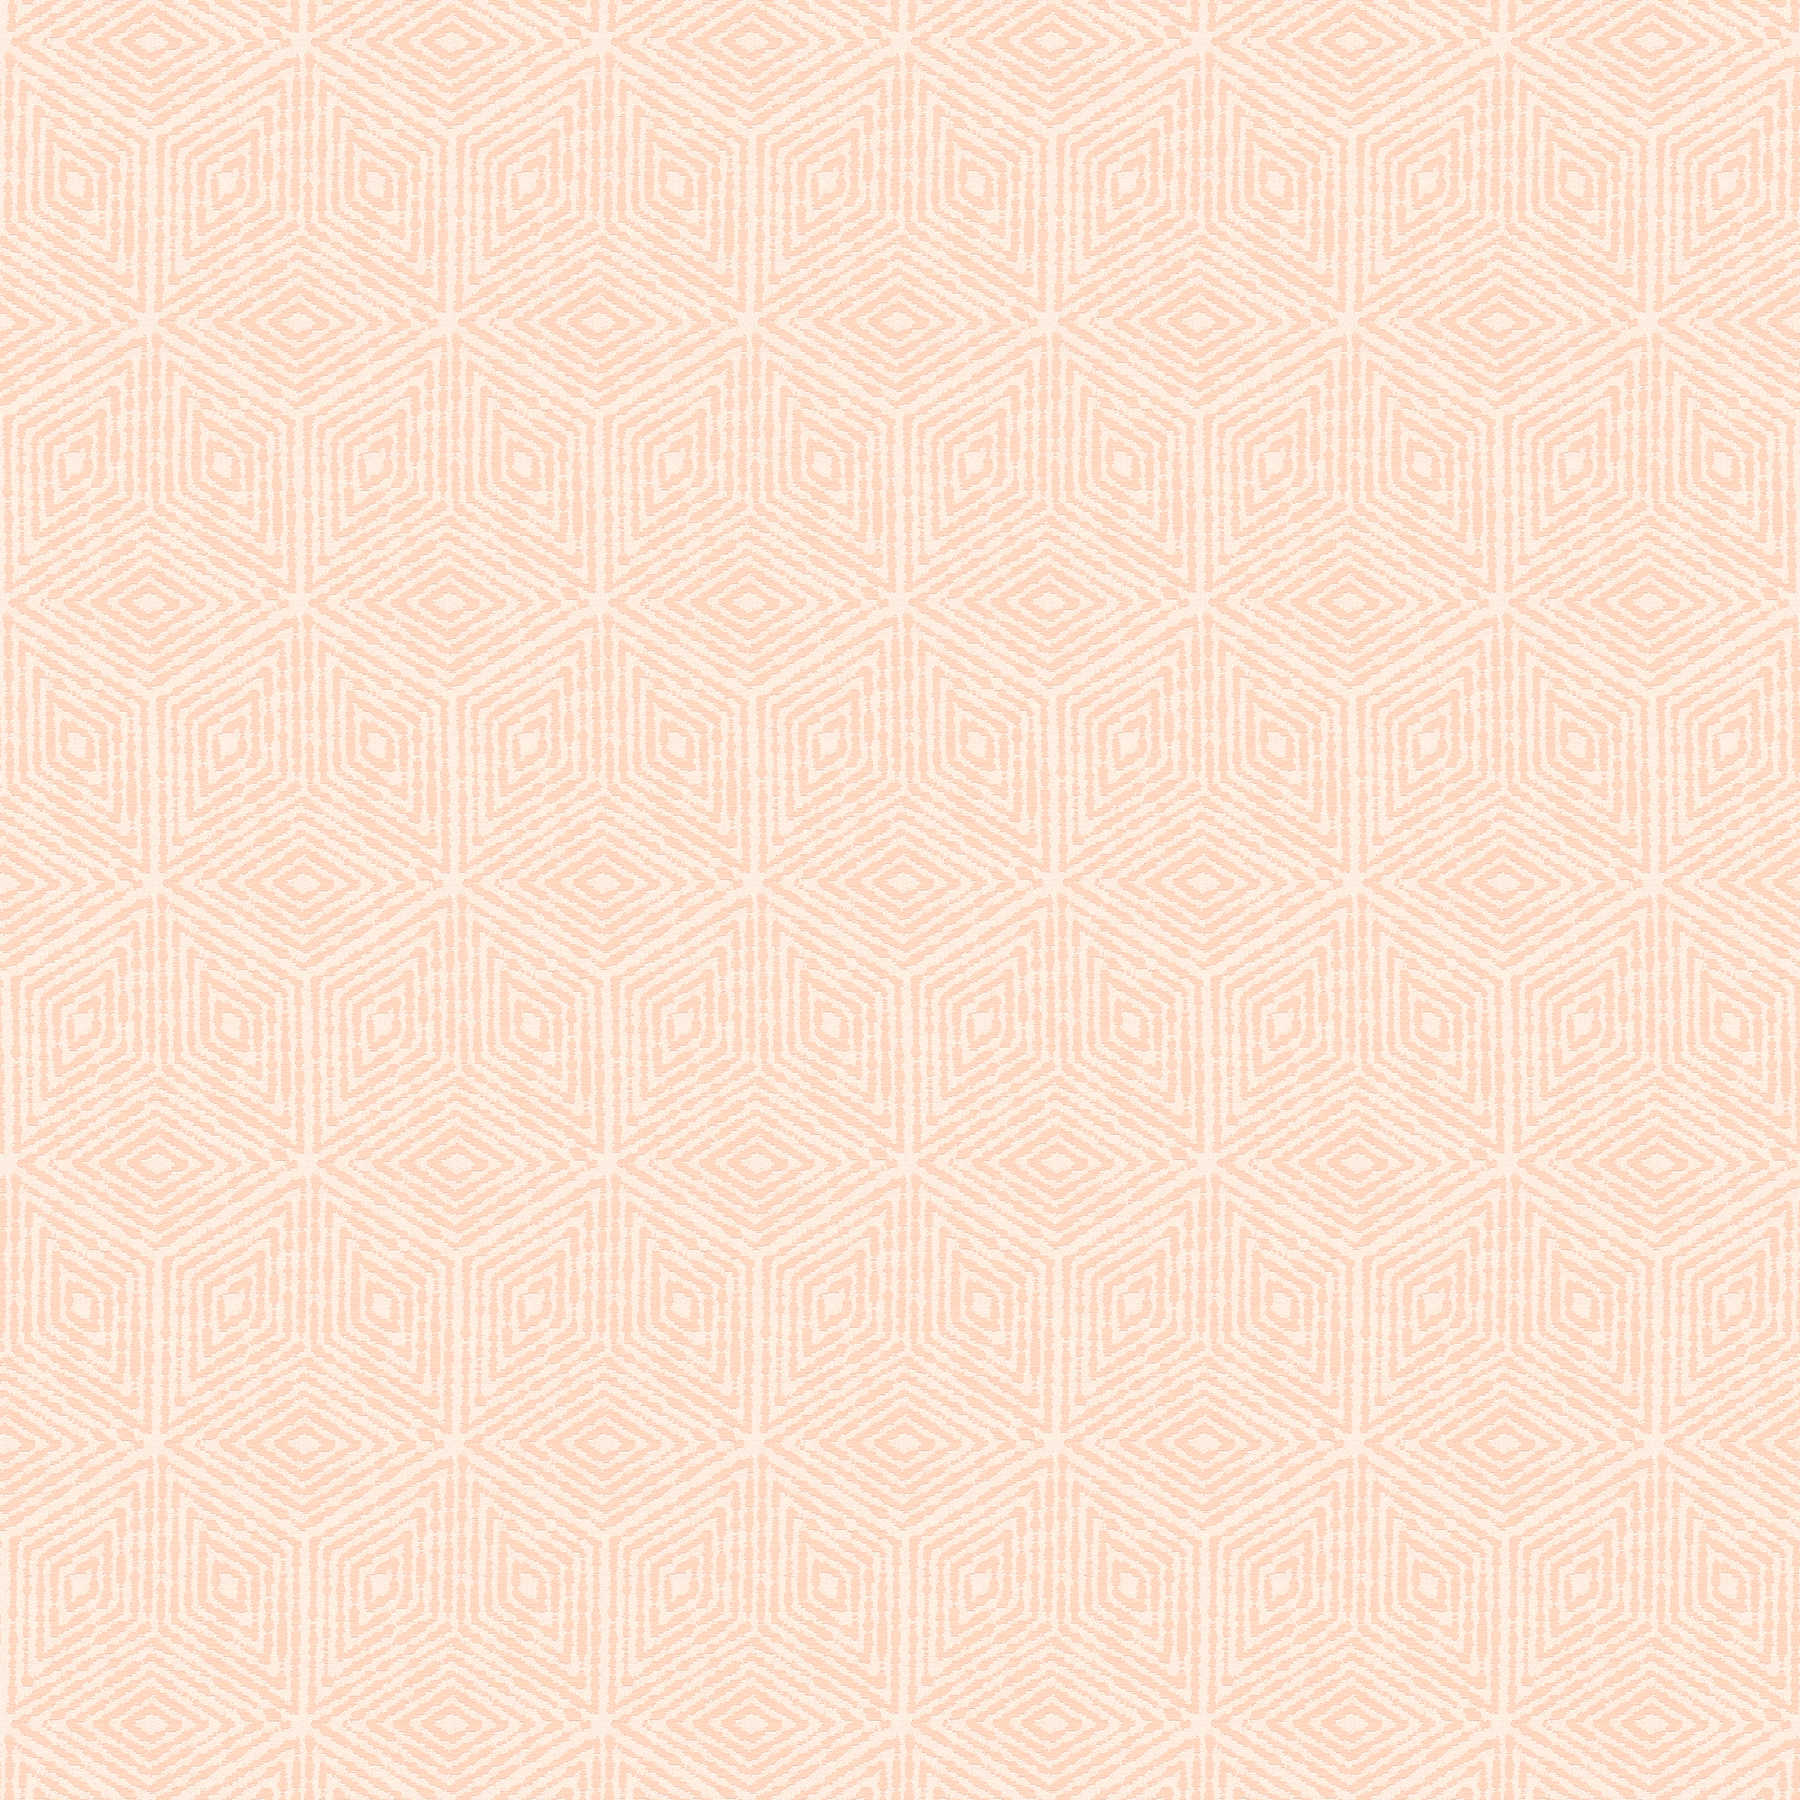 Papier peint graphique motif géométrique losange & hexagone - orange, rose
